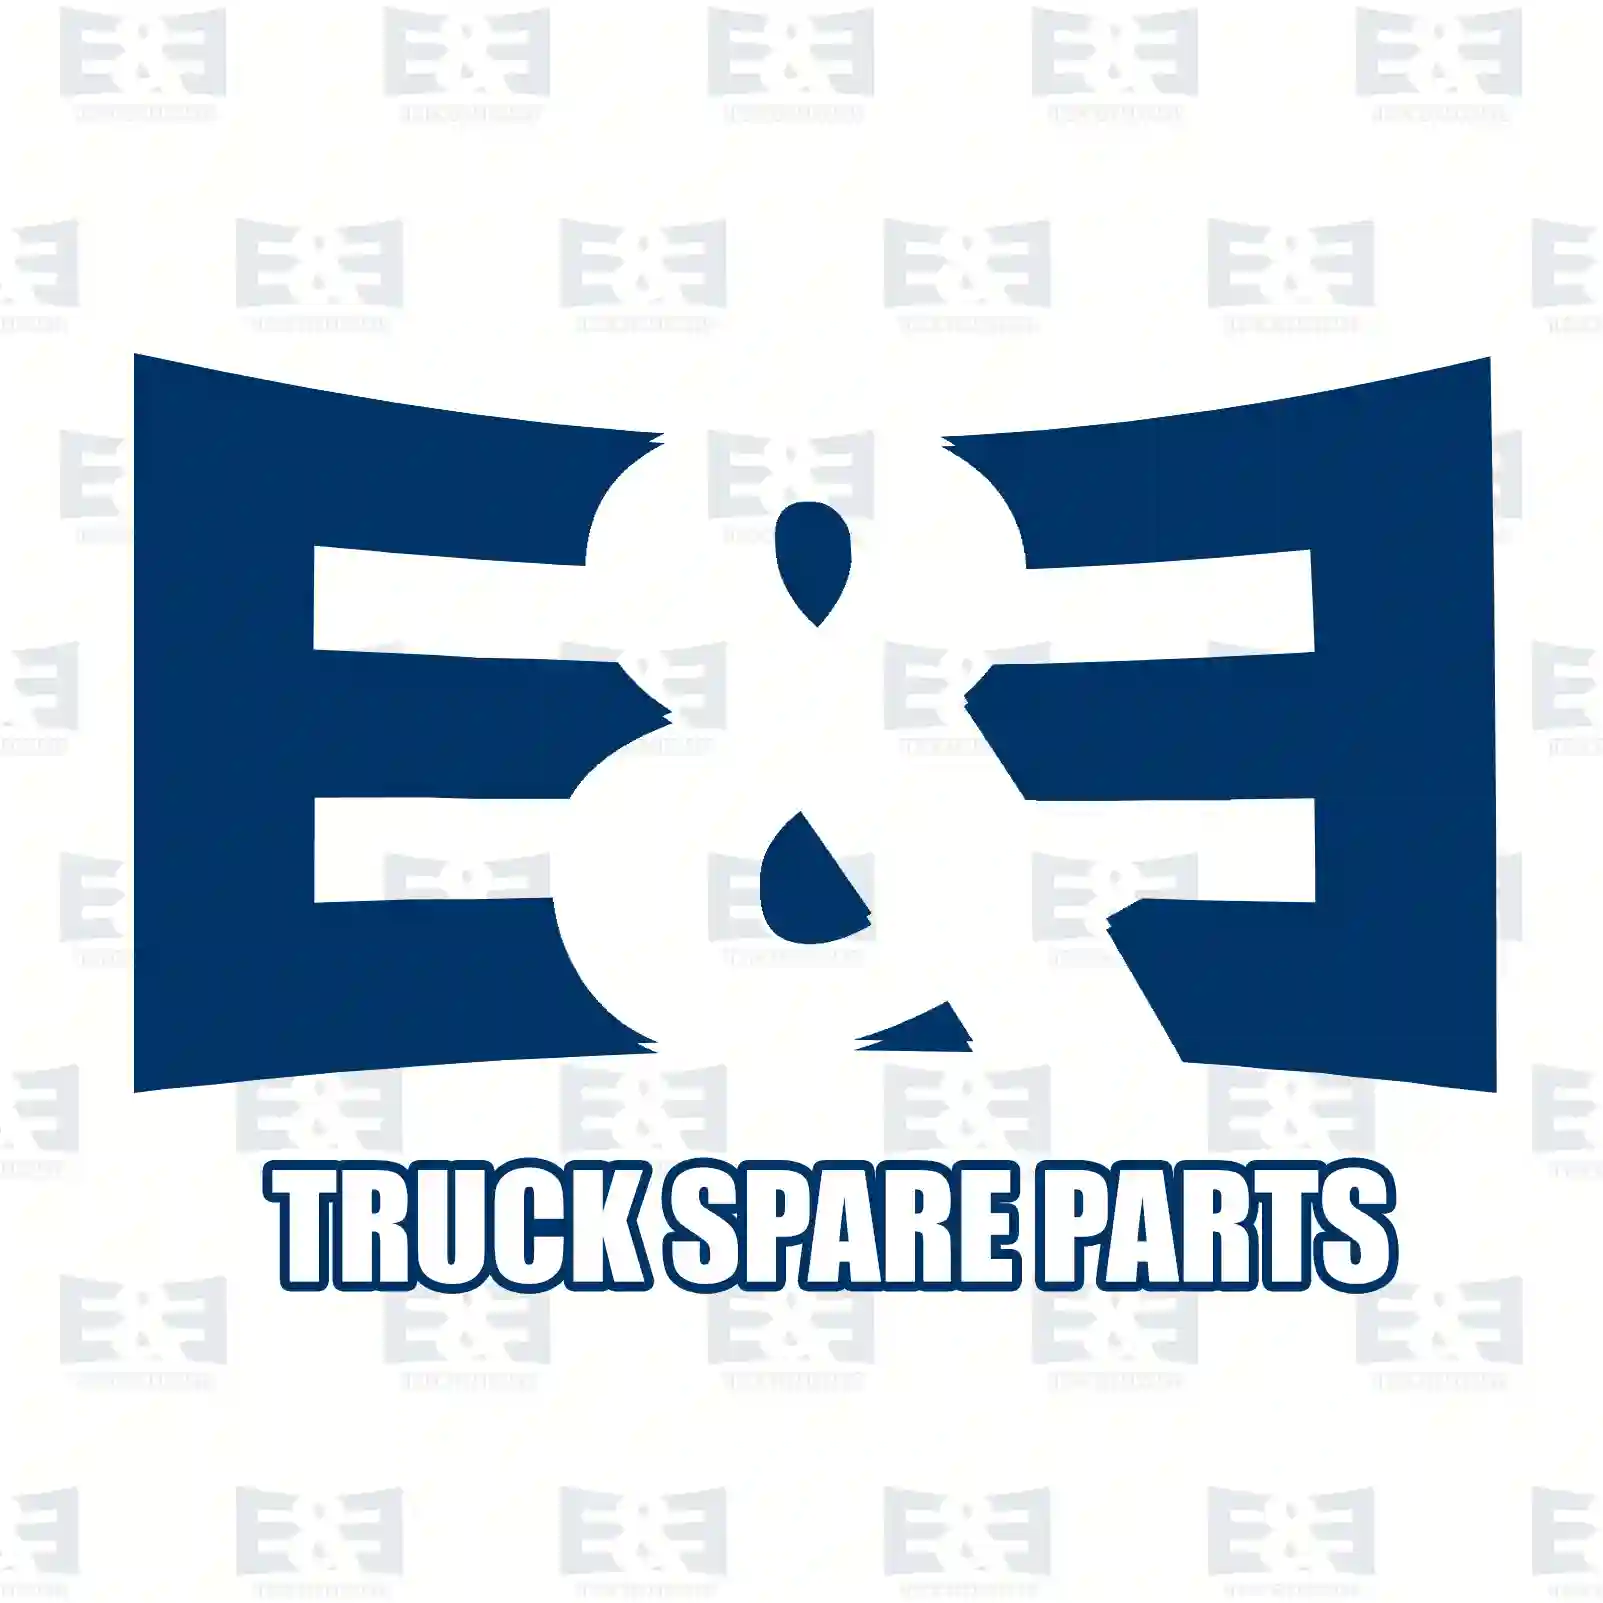 Engine hood slot, lower, 2E2275079, 9417500484 ||  2E2275079 E&E Truck Spare Parts | Truck Spare Parts, Auotomotive Spare Parts Engine hood slot, lower, 2E2275079, 9417500484 ||  2E2275079 E&E Truck Spare Parts | Truck Spare Parts, Auotomotive Spare Parts